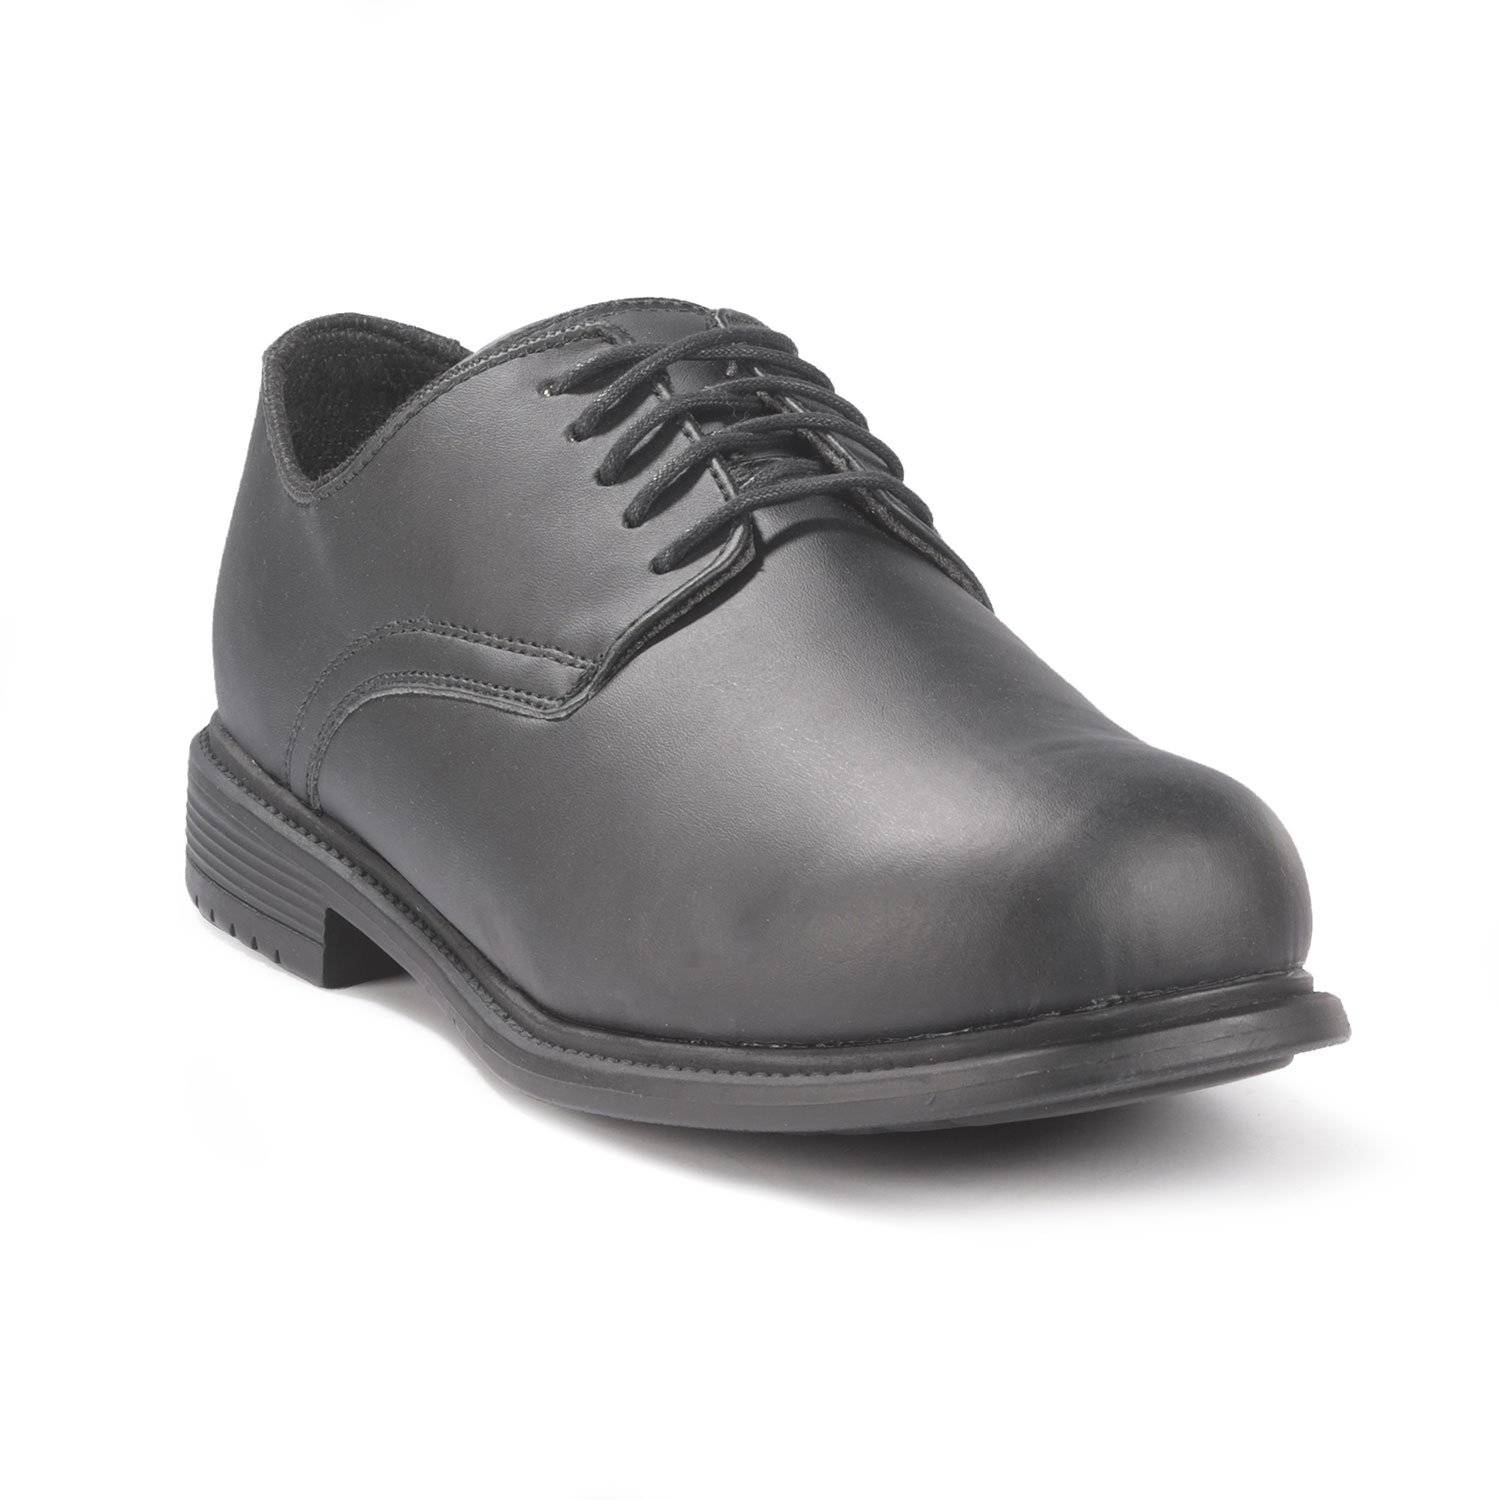 LawPro Men's Oxford Shoe